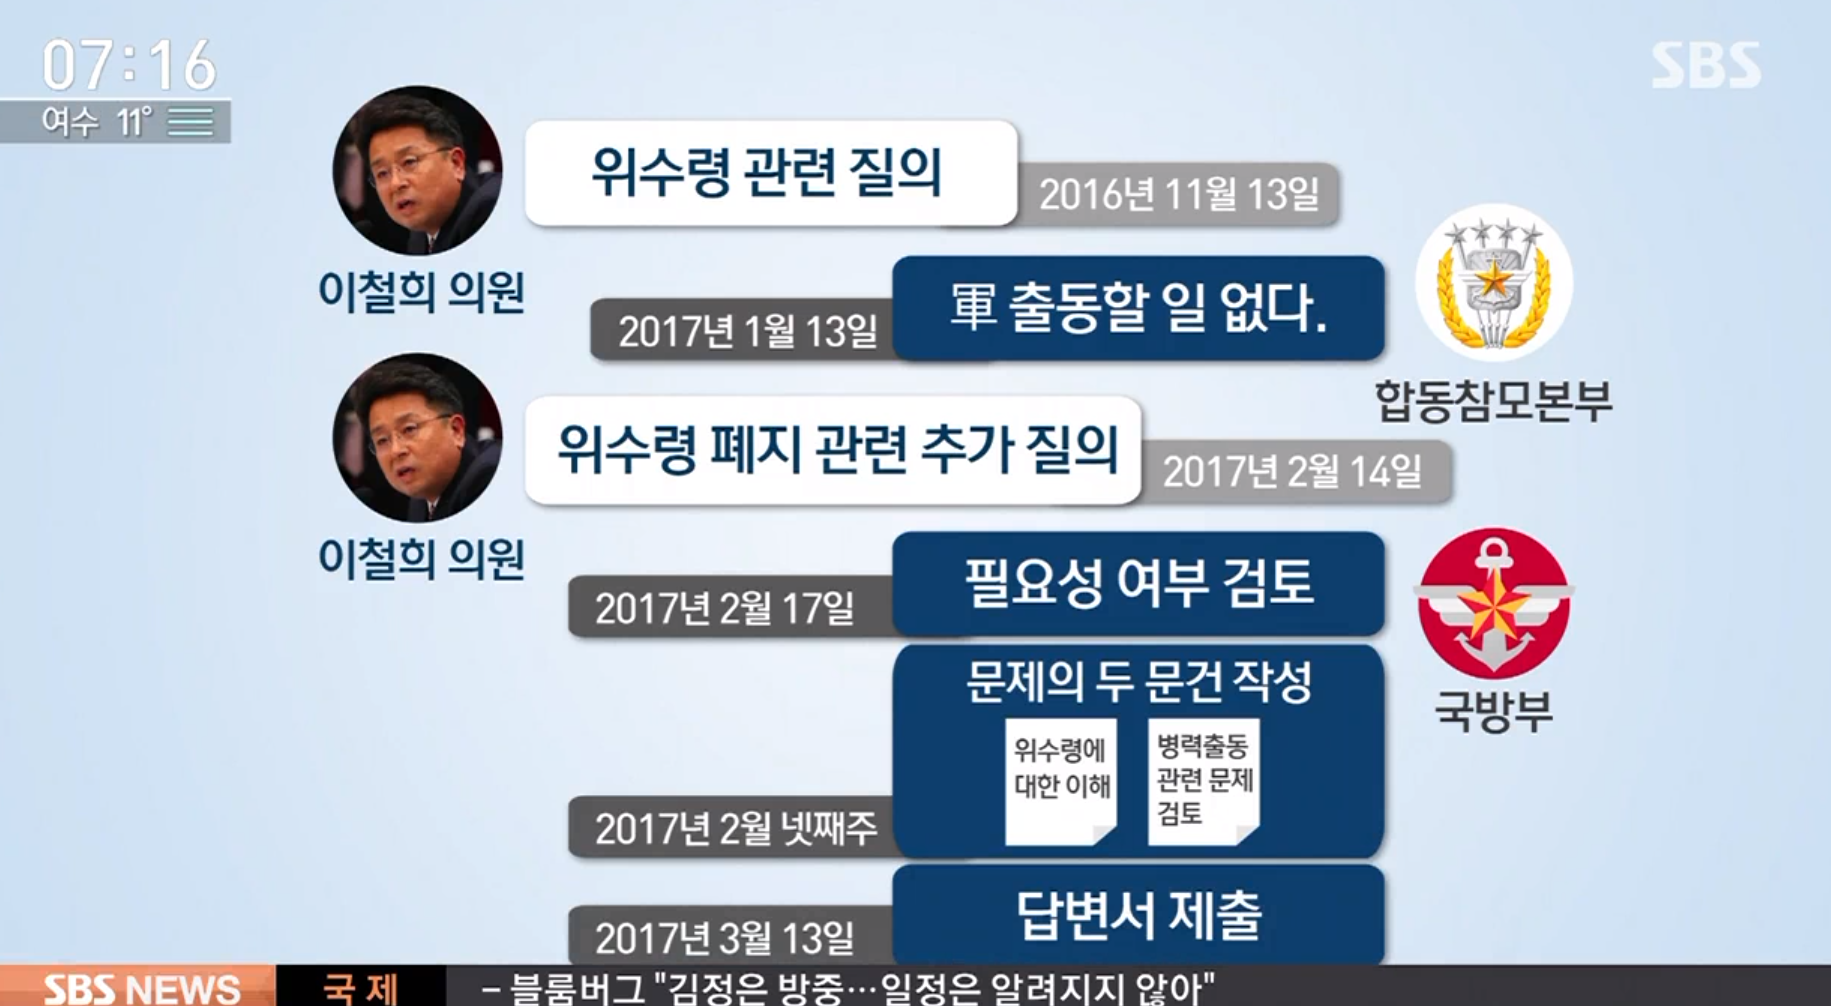 ▲ SBS 위수령 관련 보도화면 갈무리. SBS는 JTBC가 보도한 군의 위수령 검토 문건이 이철희 의원과 군의 질답 과정에서 나온 것이라고 주장했다.